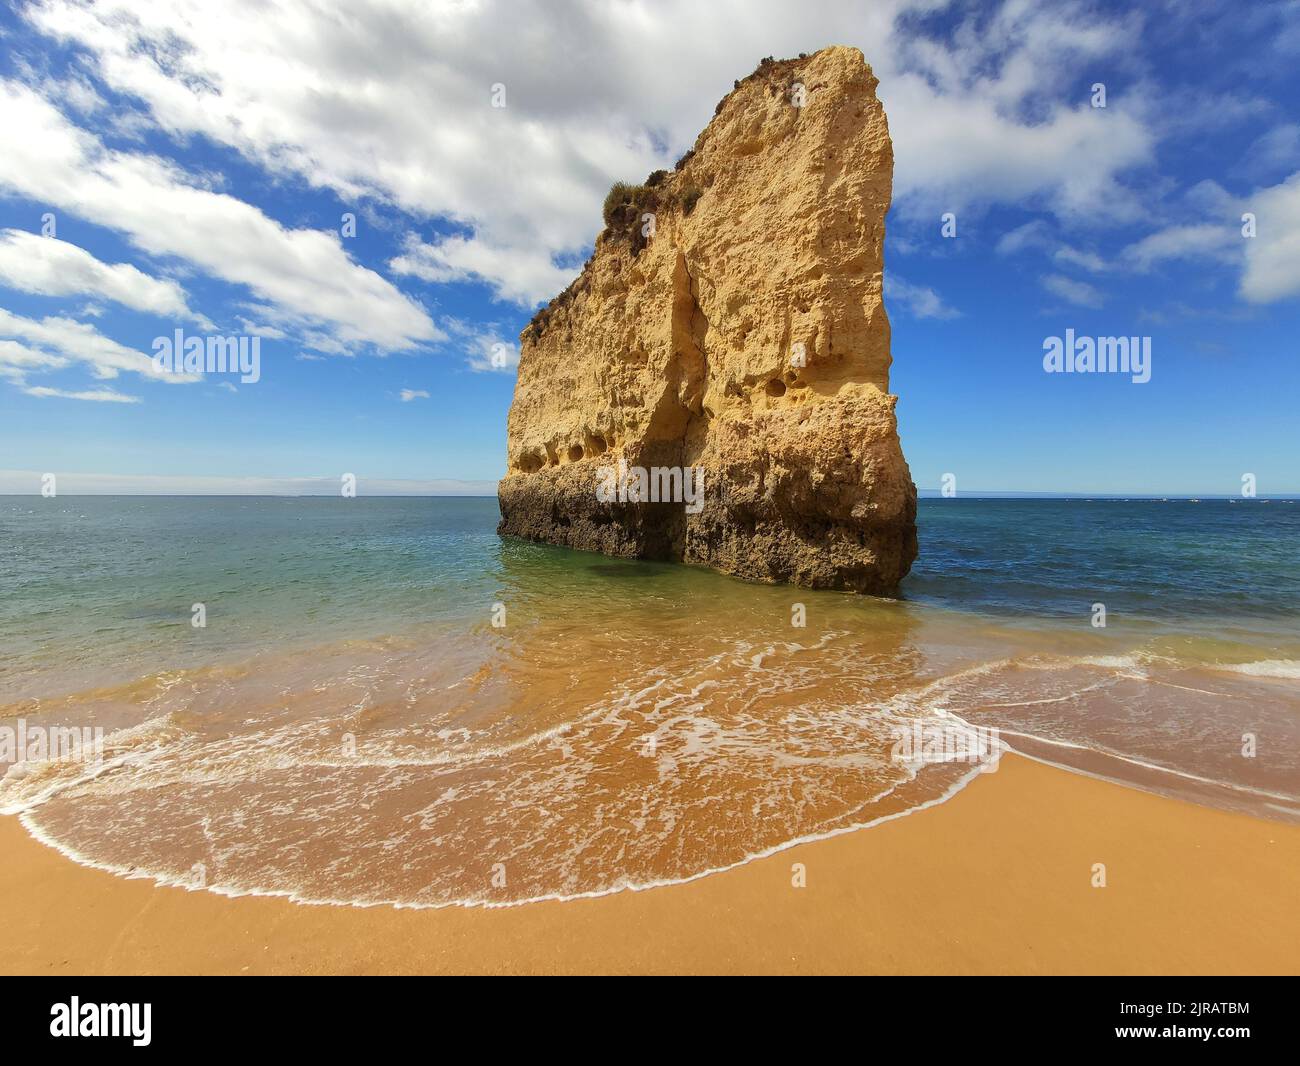 Algarve beach cliff rock in Portugal. Scenic Atlantic Ocean view. Stock Photo